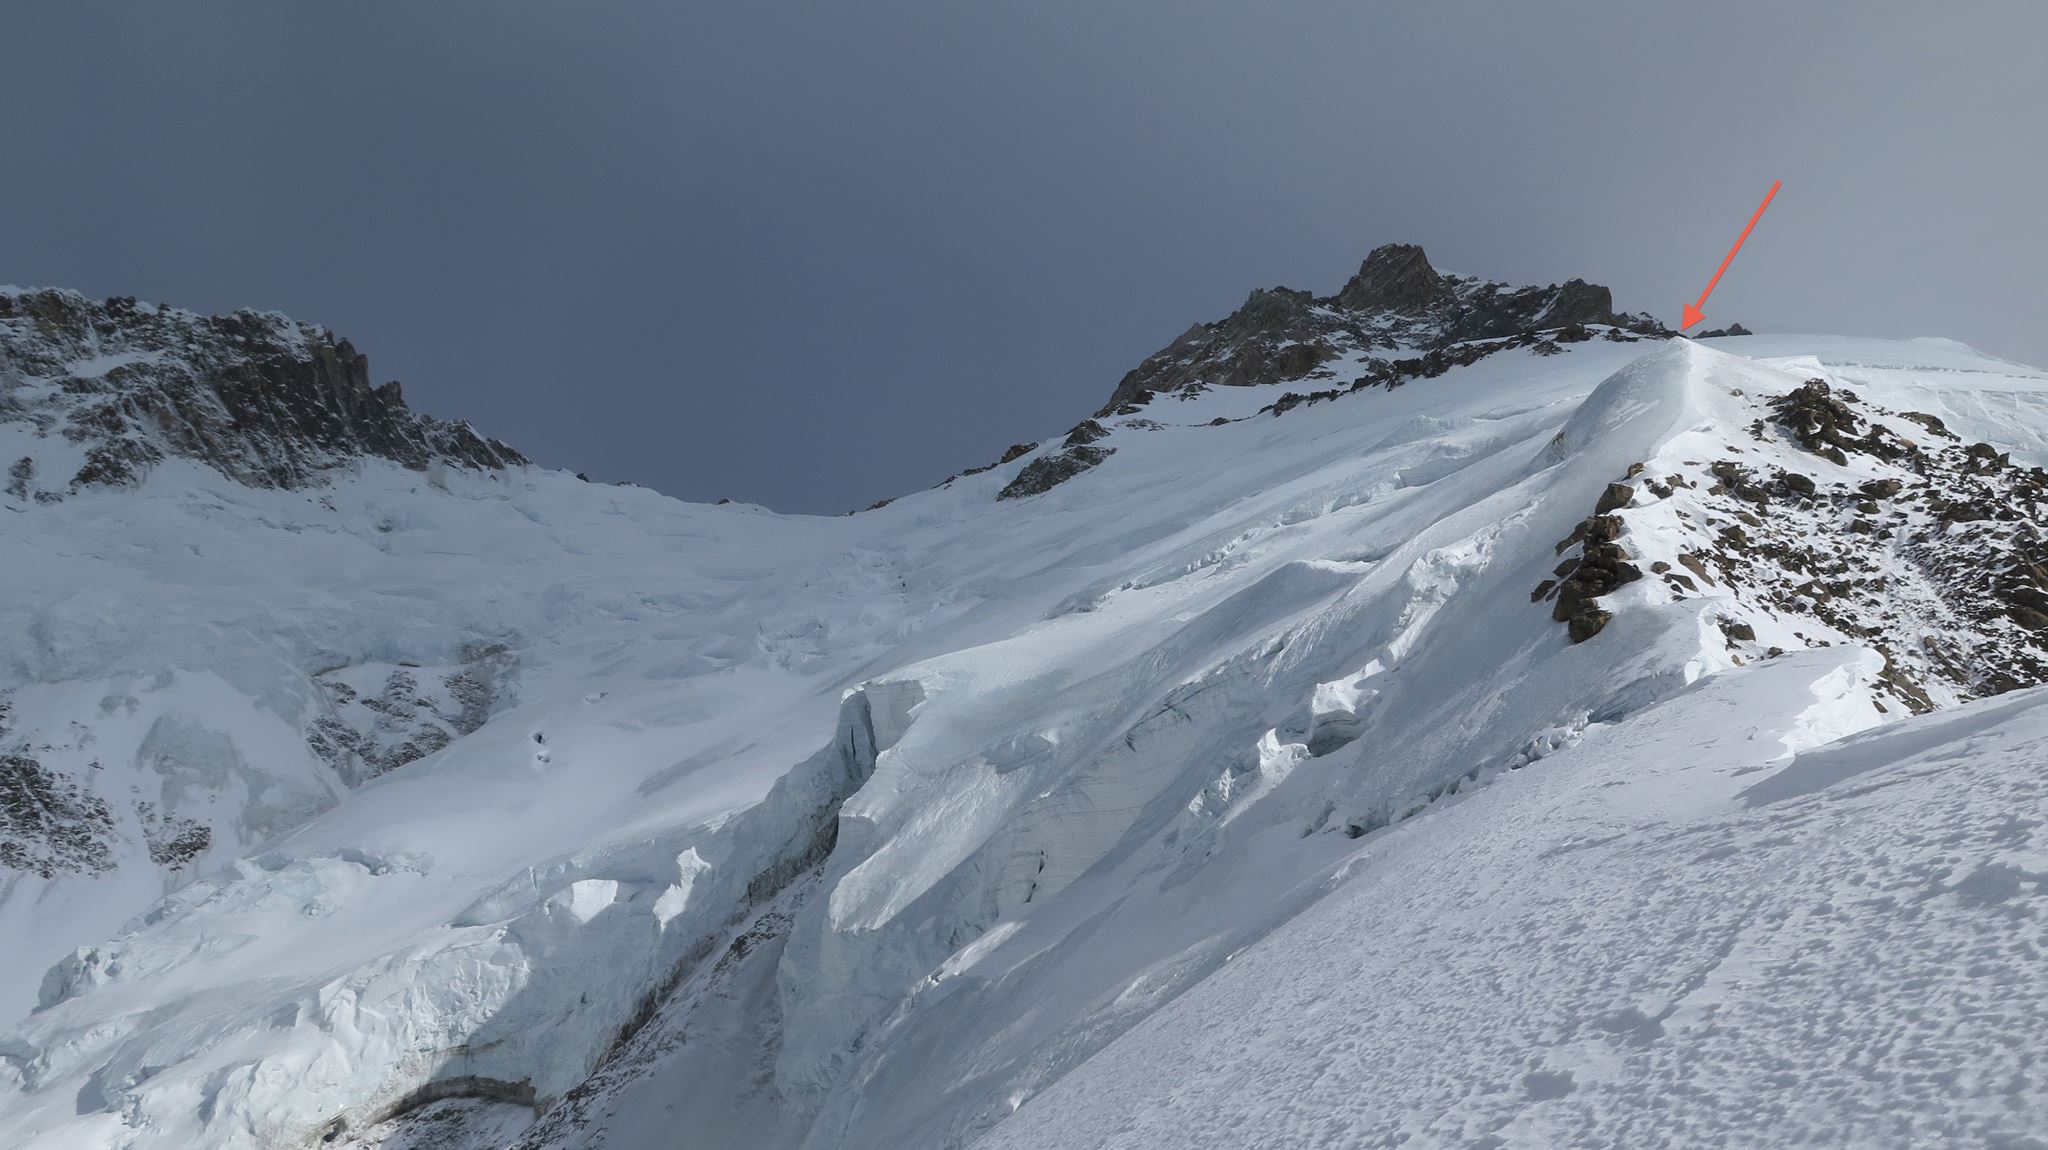 Нангапарбат с отметки 6400 метров, на которую поднялись 20 января Симоне Моро и Дэвид Геттлер (обозначена красной стрелкой)